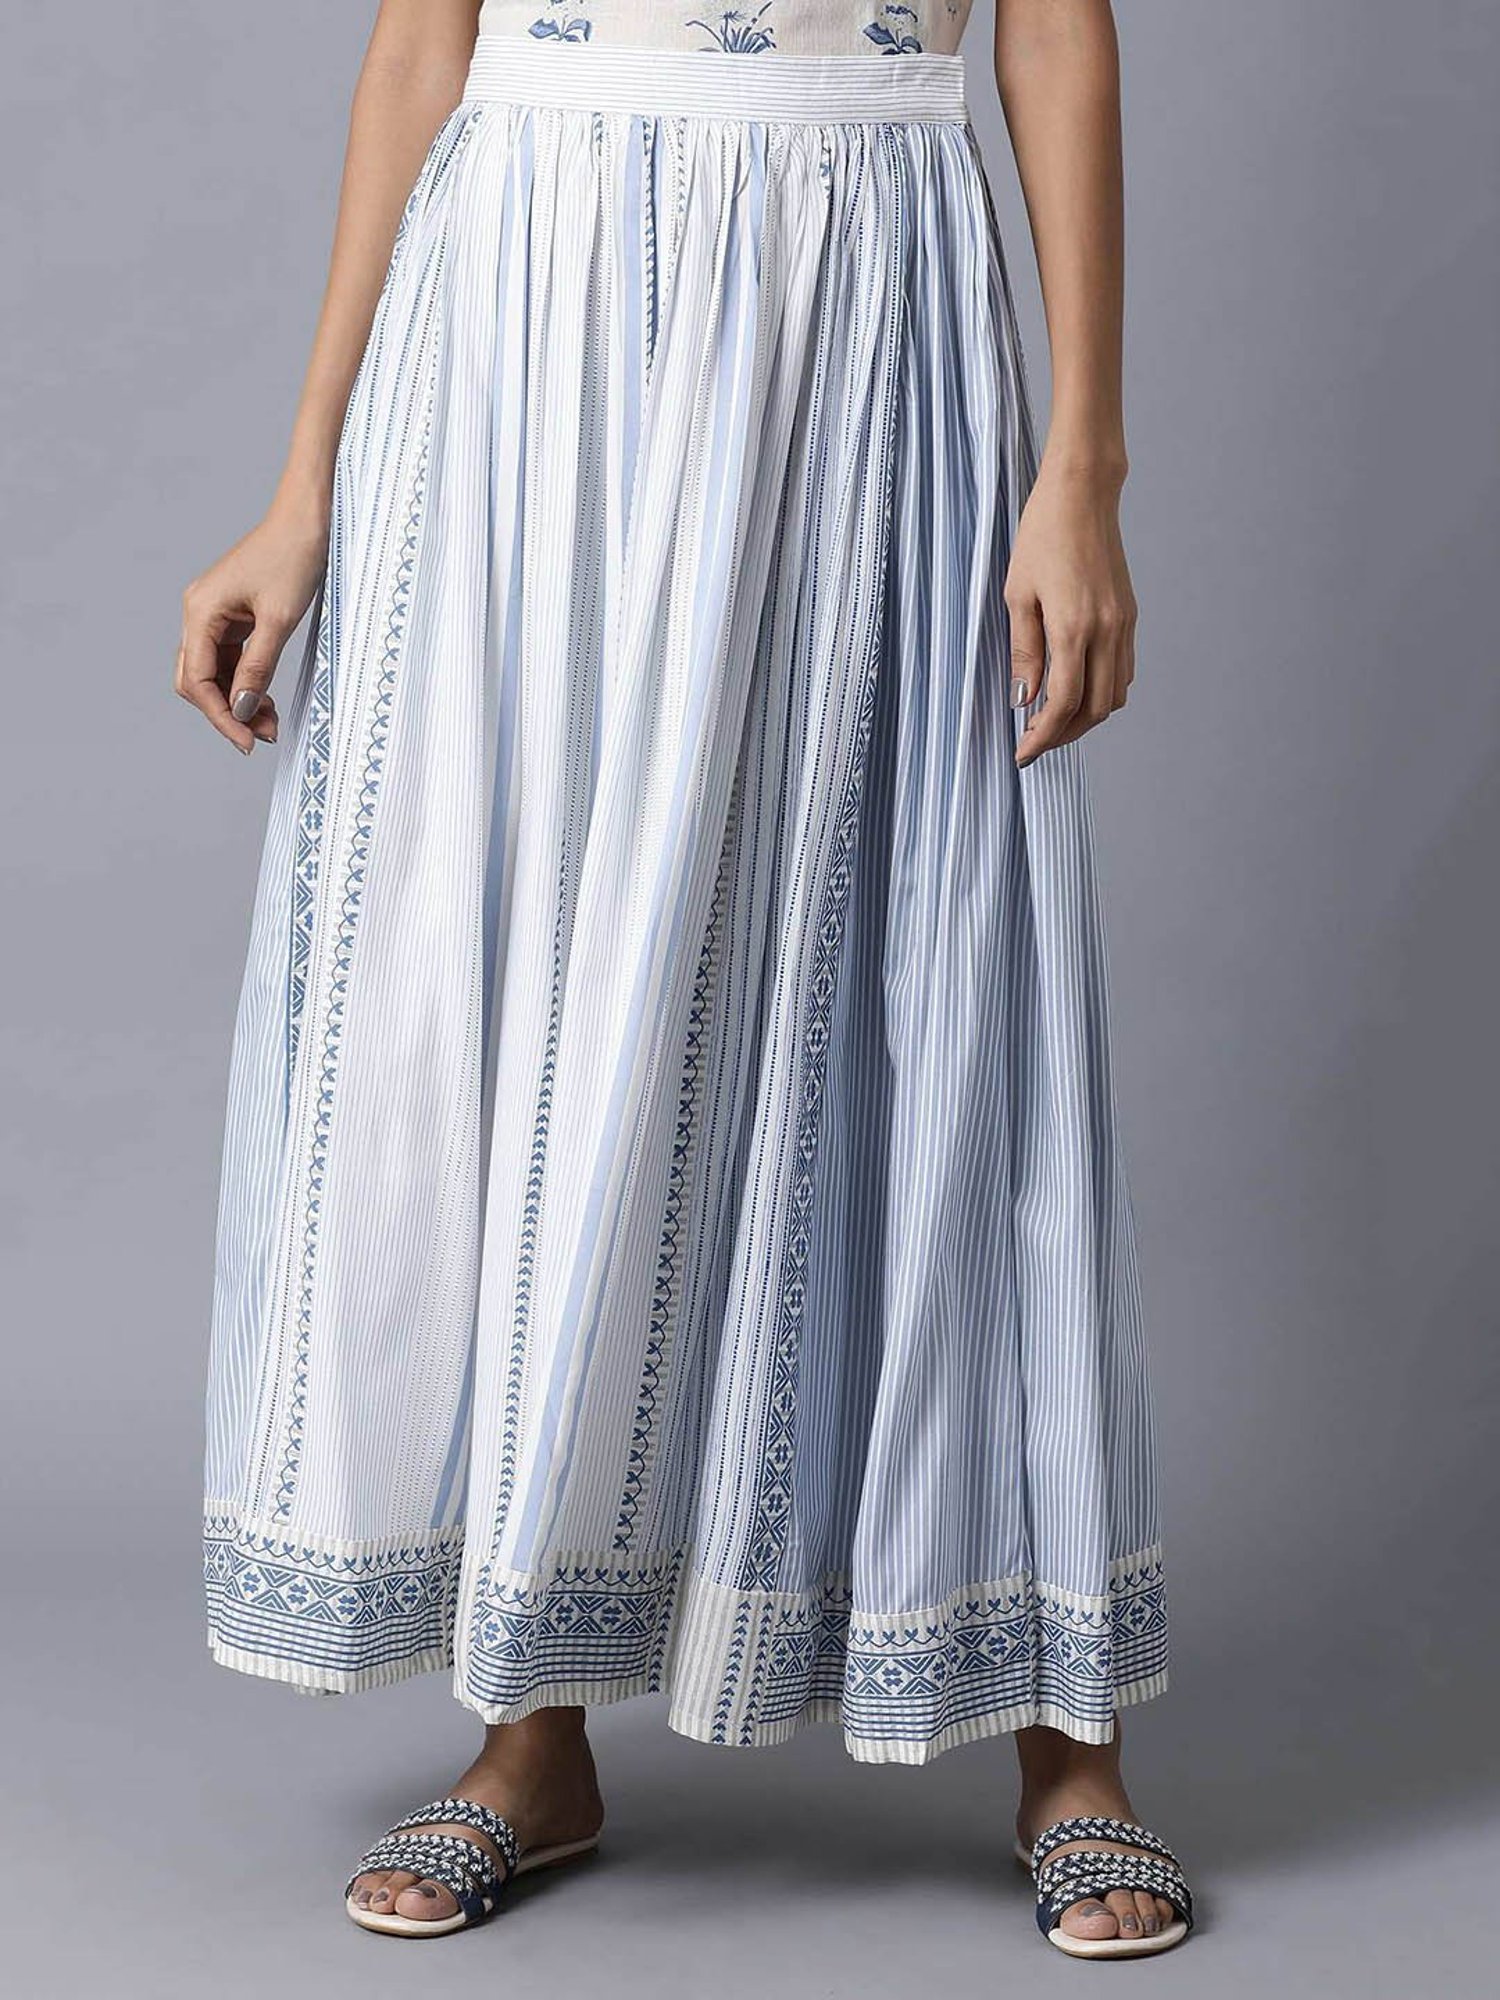 Buy W Light Blue Skirt for Women's Online @ Tata CLiQ